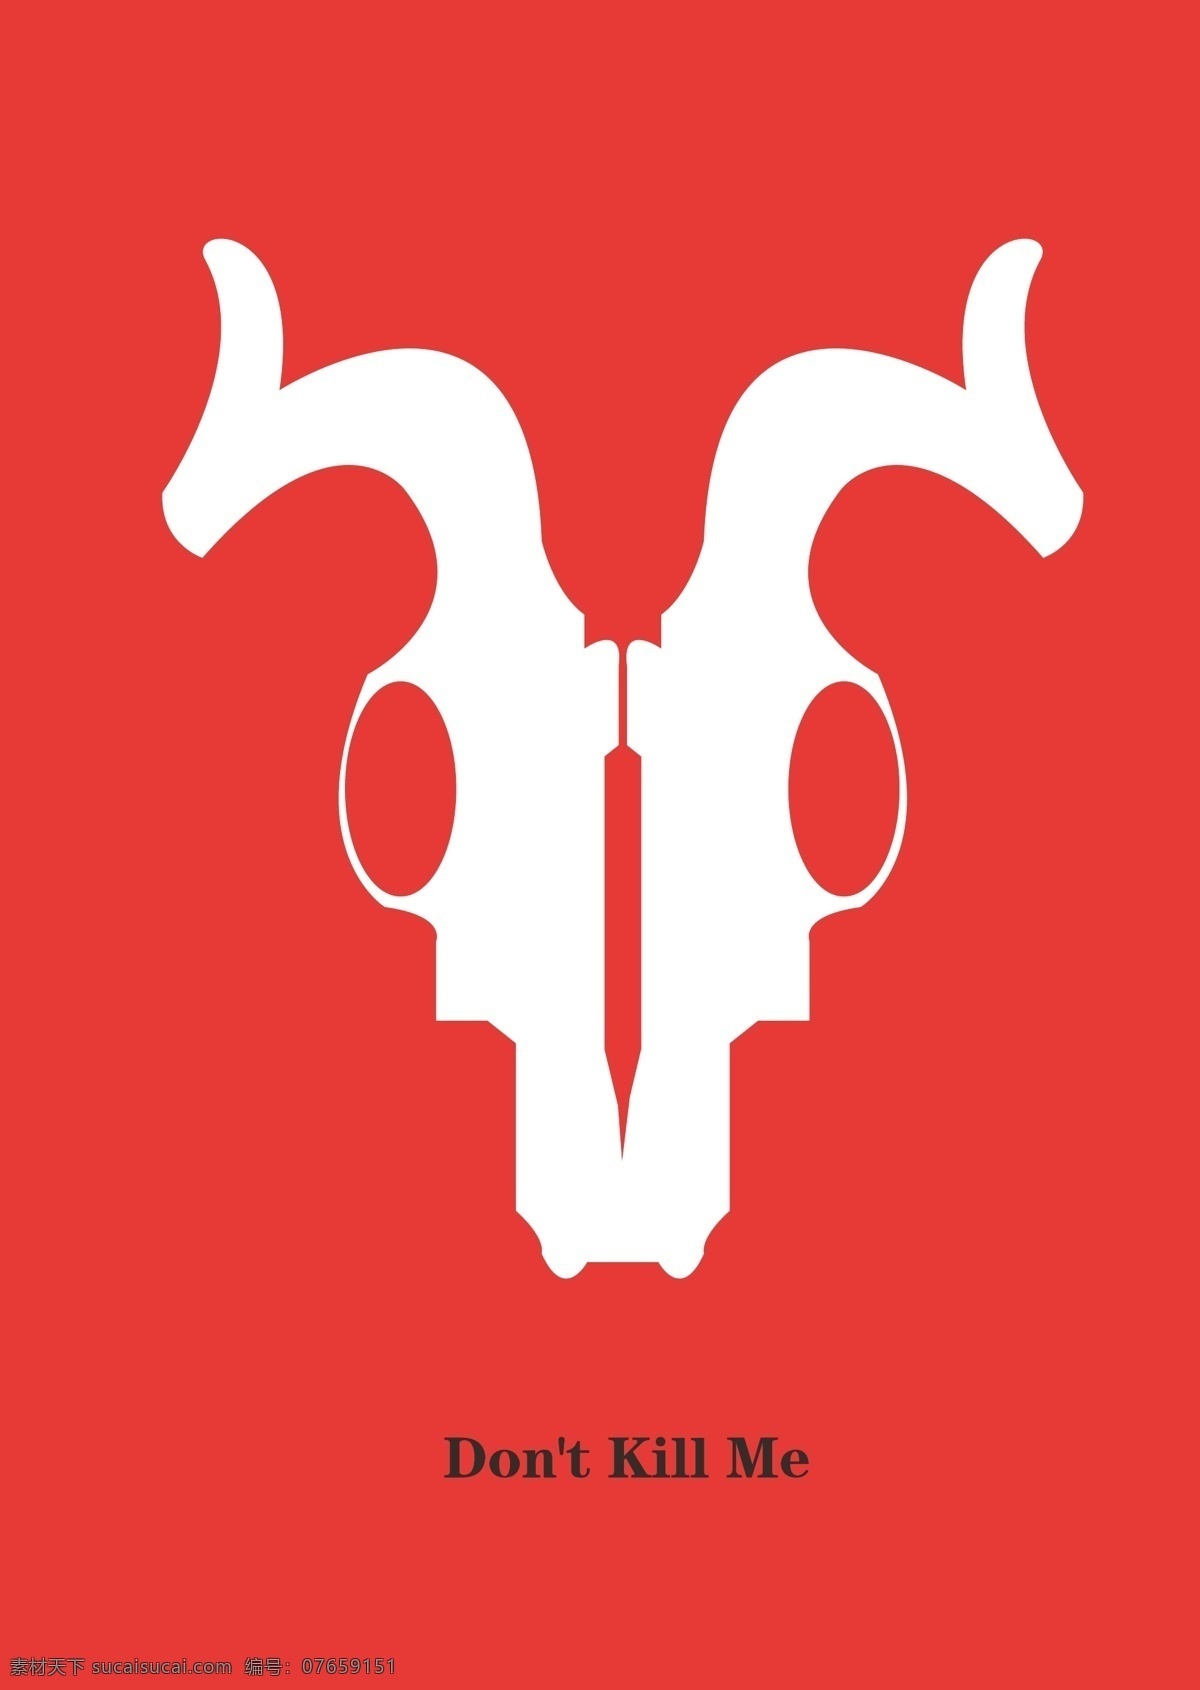 保护 动物 公益 海报 羚羊 图形设计 动物图形 公益海报 平面设计 藏羚羊 图形创意 保护动物